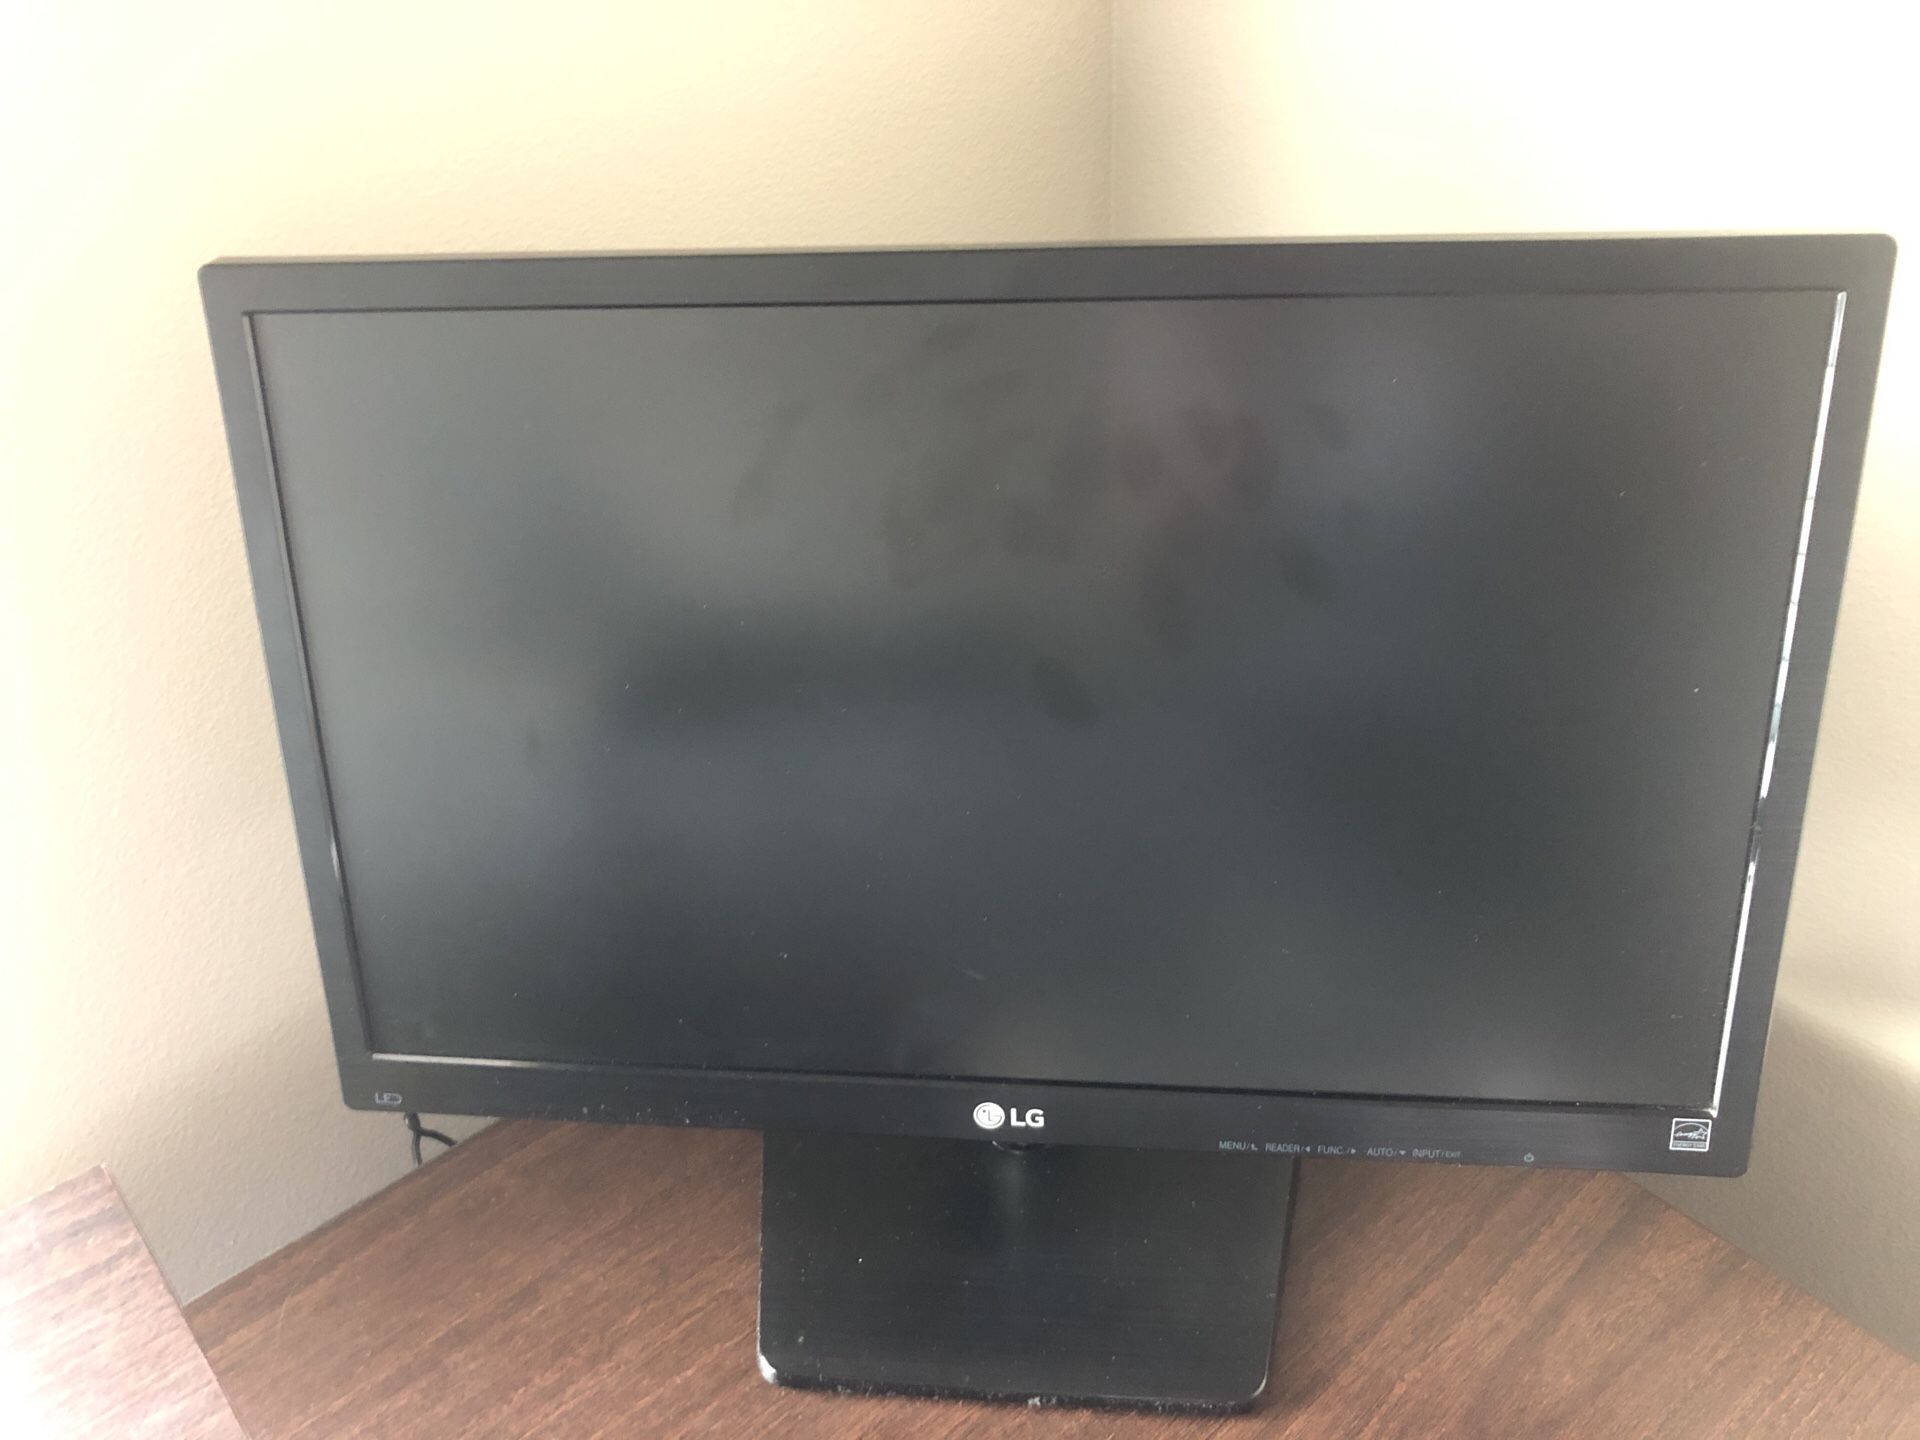 LG led monitor